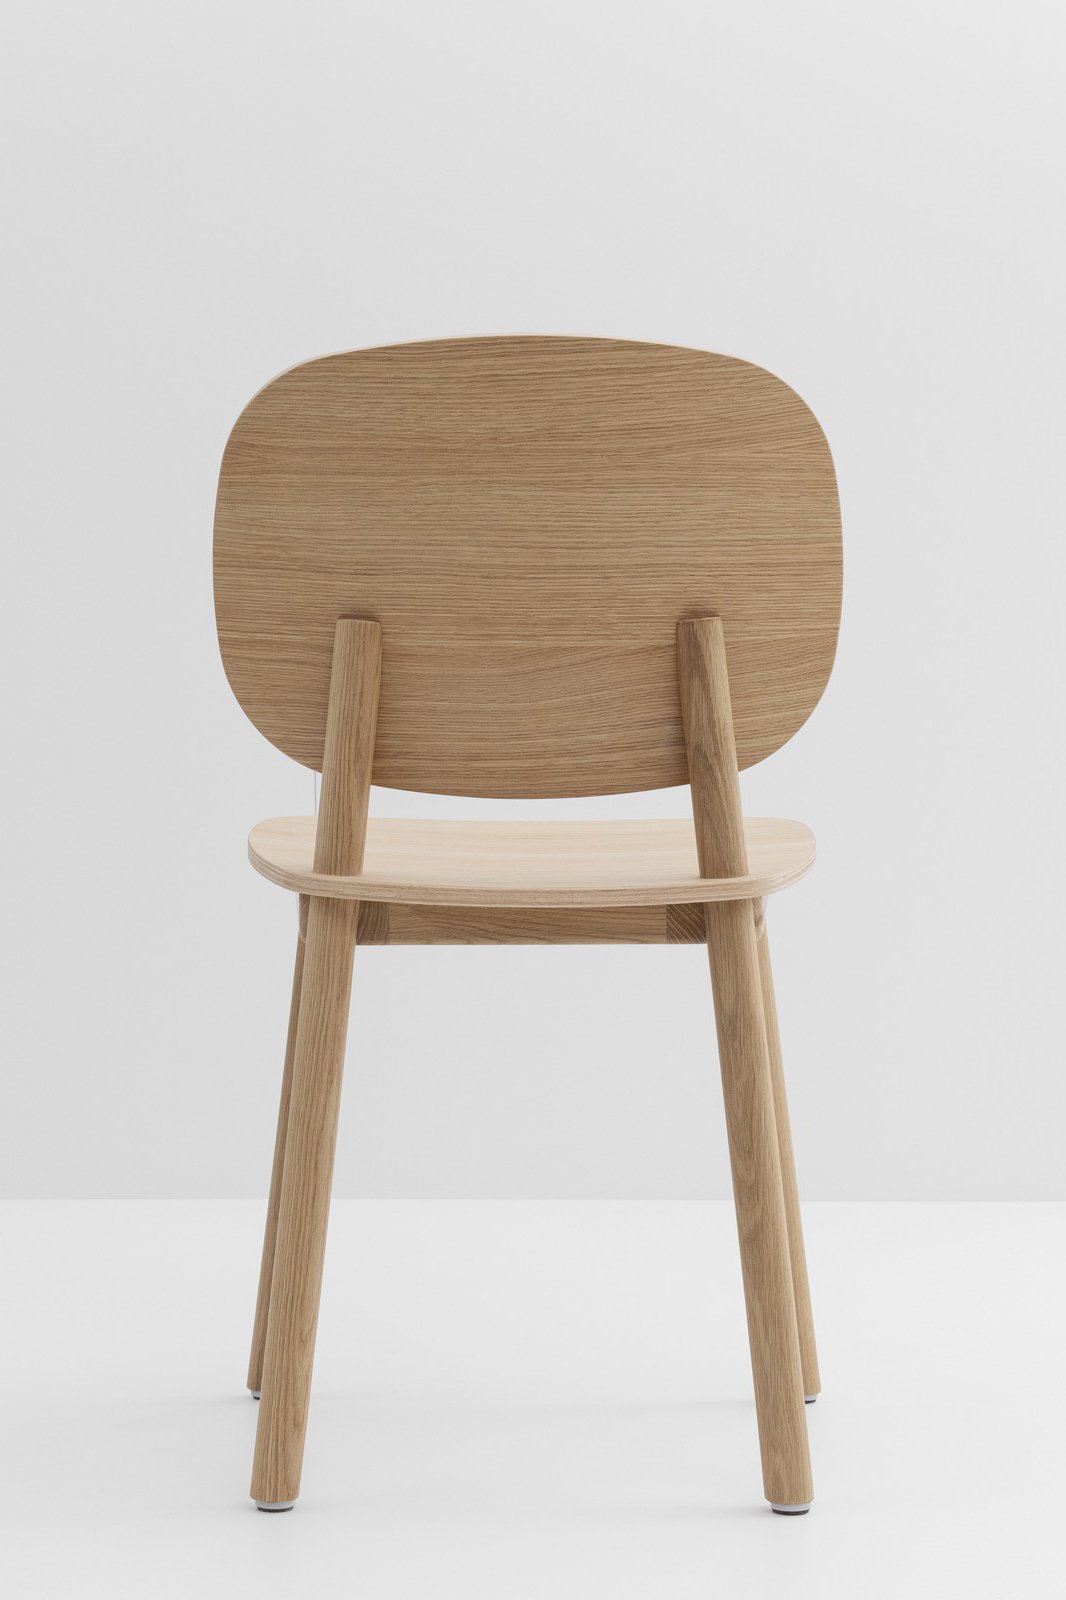 Met zijn originele en stevige structuur is deze eiken PADDLE Chair ideaal voor huizen, cafés, restaurants en hotels.